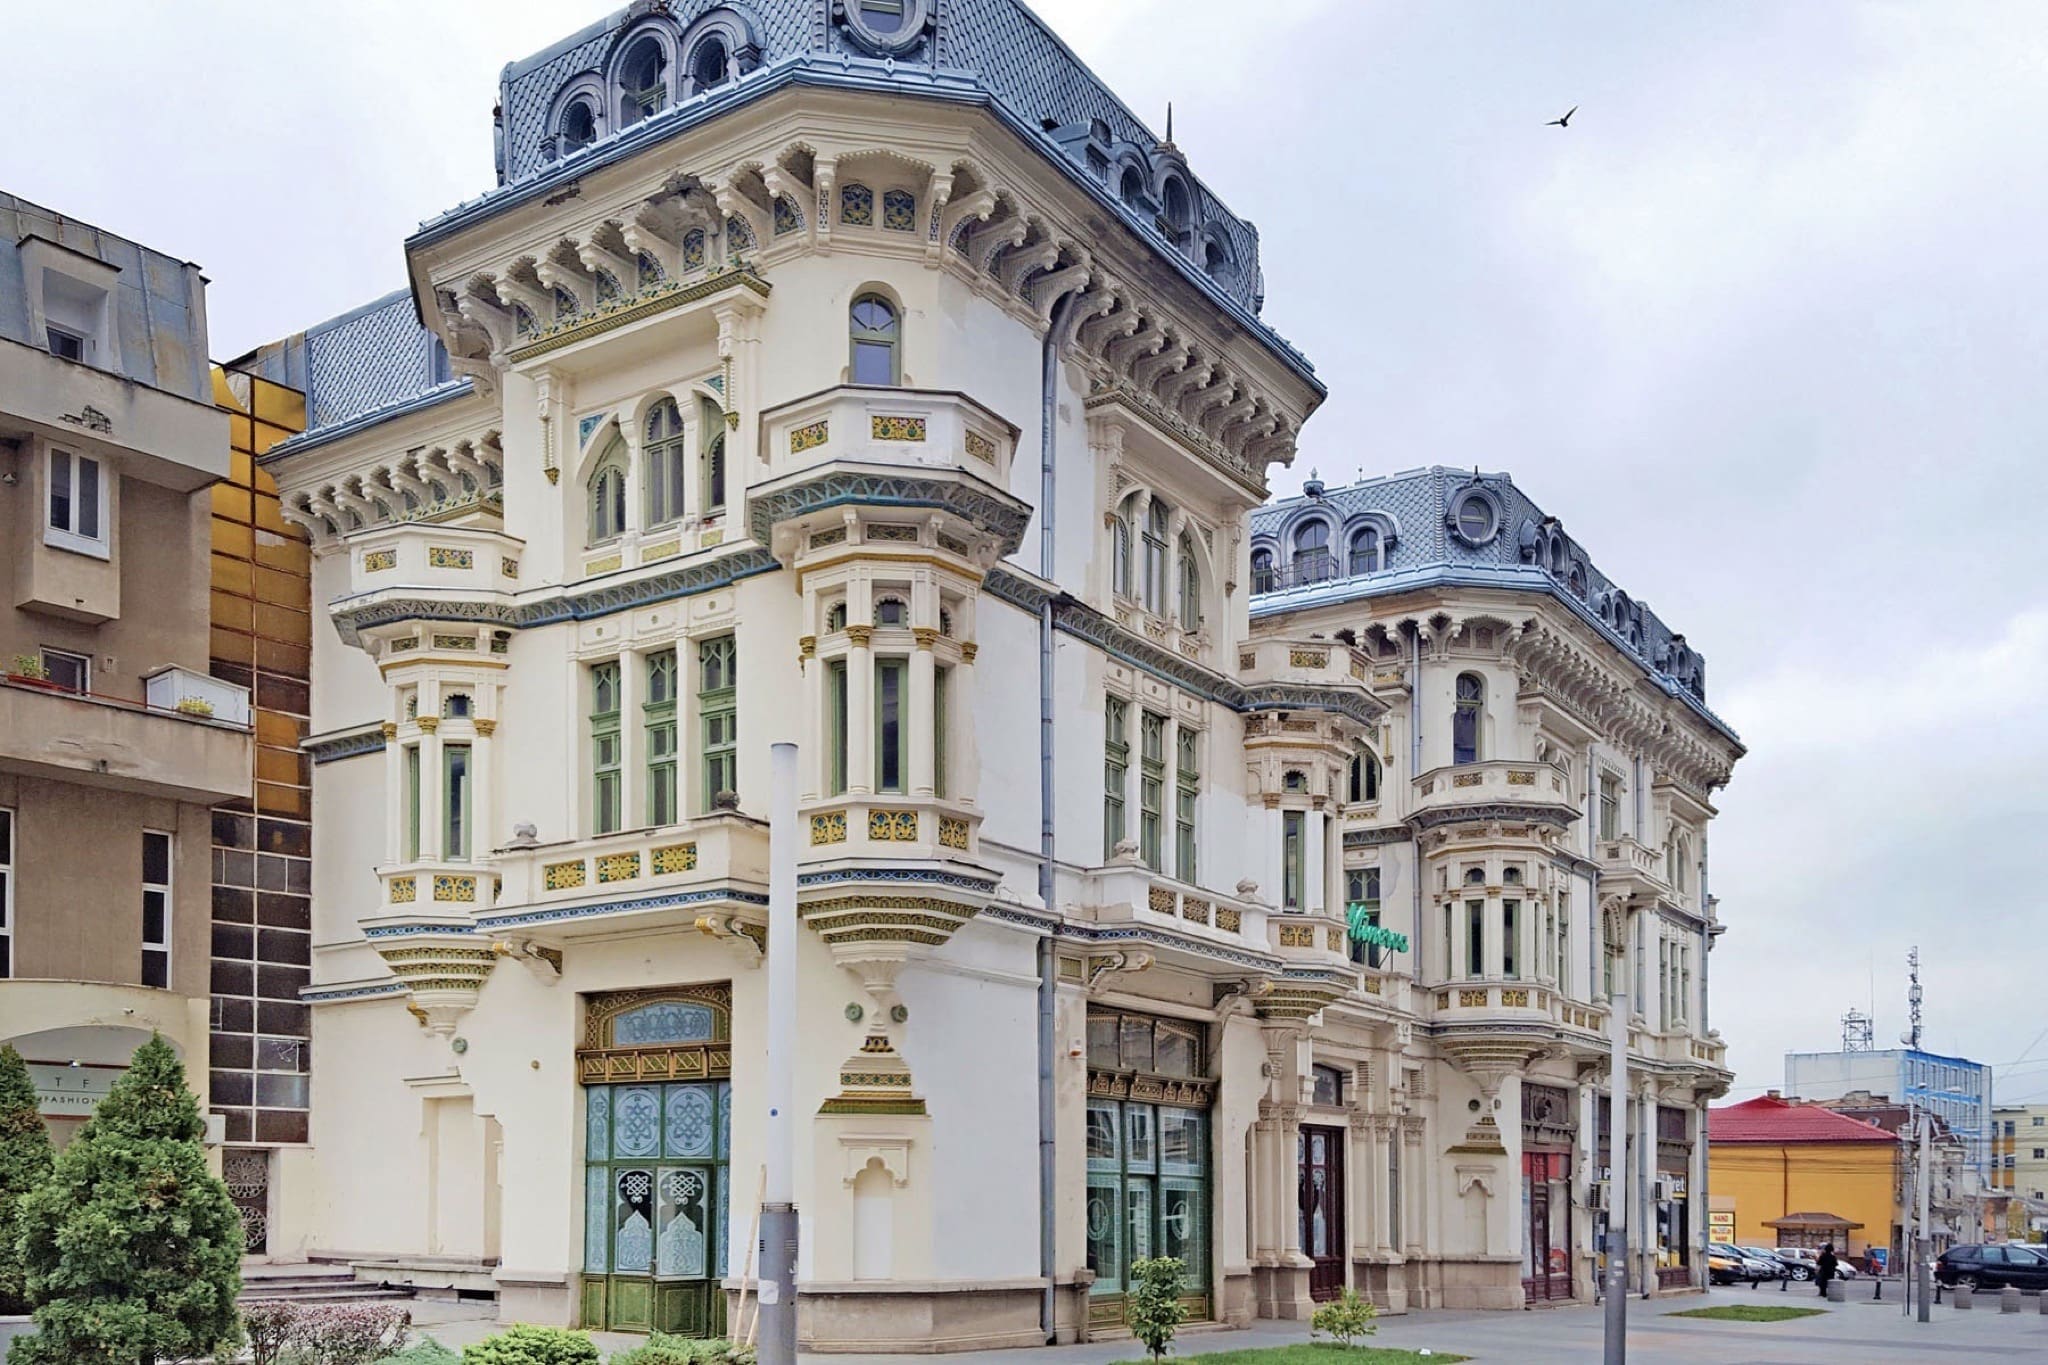 hotel minerva din craiova de vanzare artmark historical estate 3 copy - La ce preț se vând cele mai impresionante palate ale României?